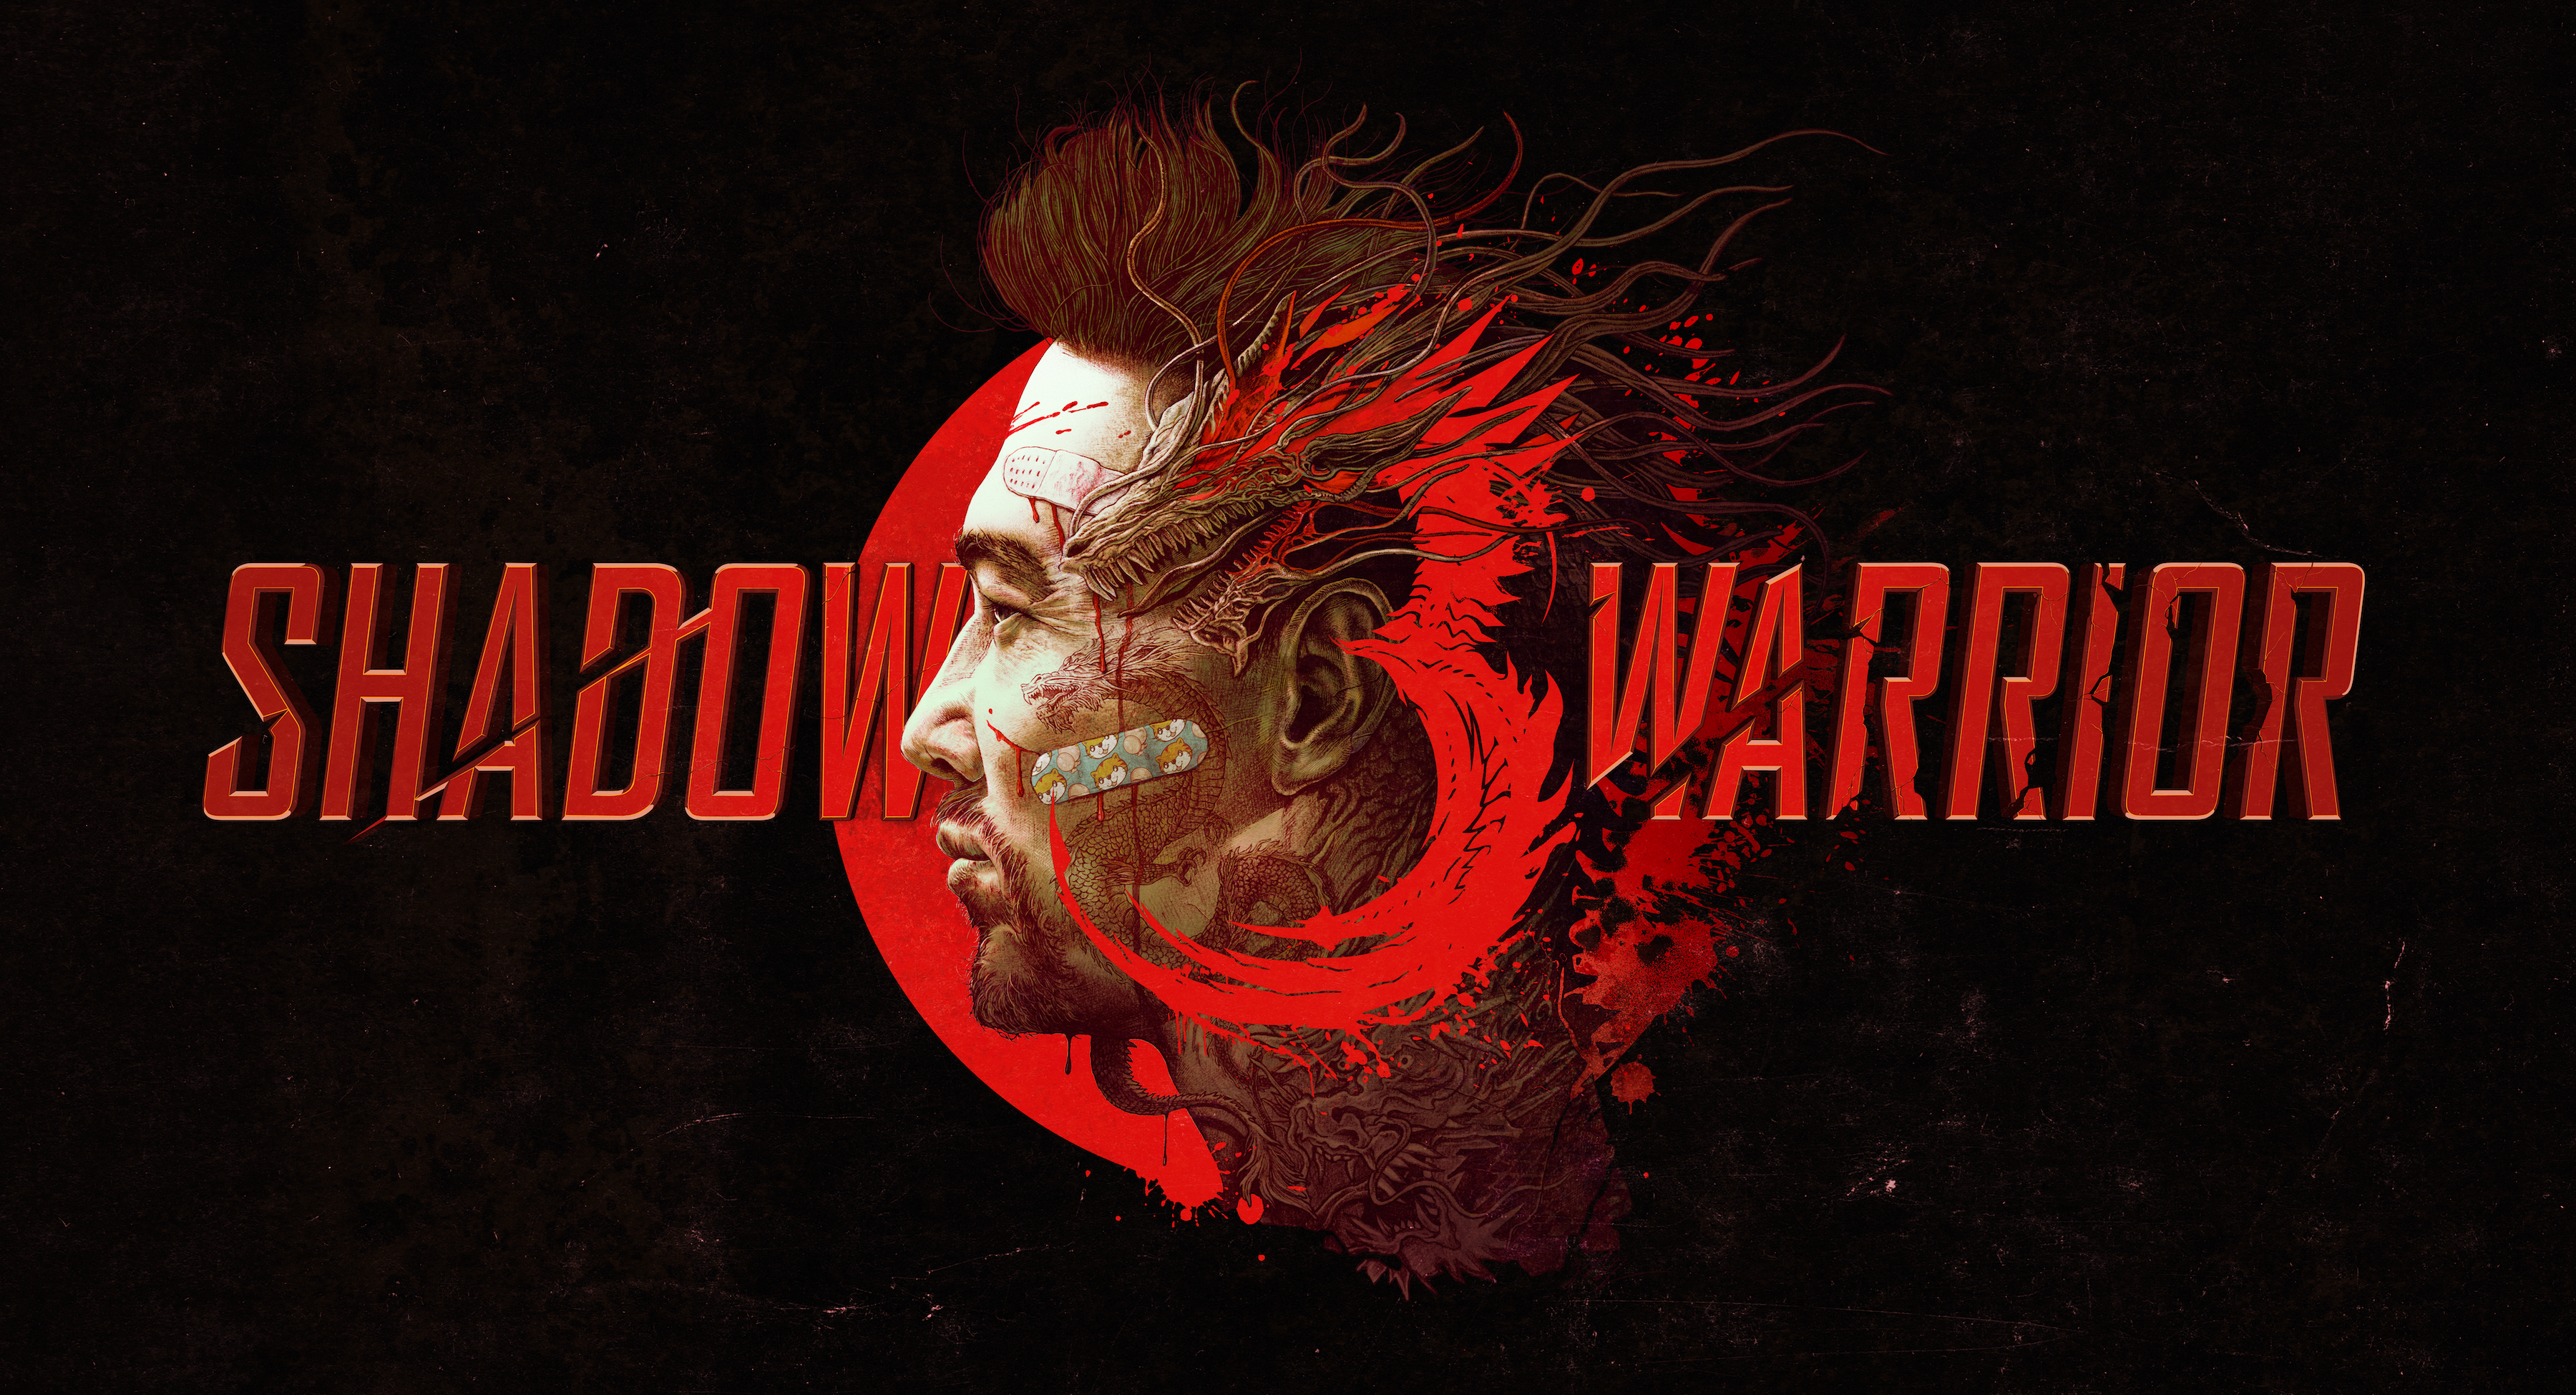 Immagine di Shadow Warrior 3 - Qualcuno vuole un po' di Wang?